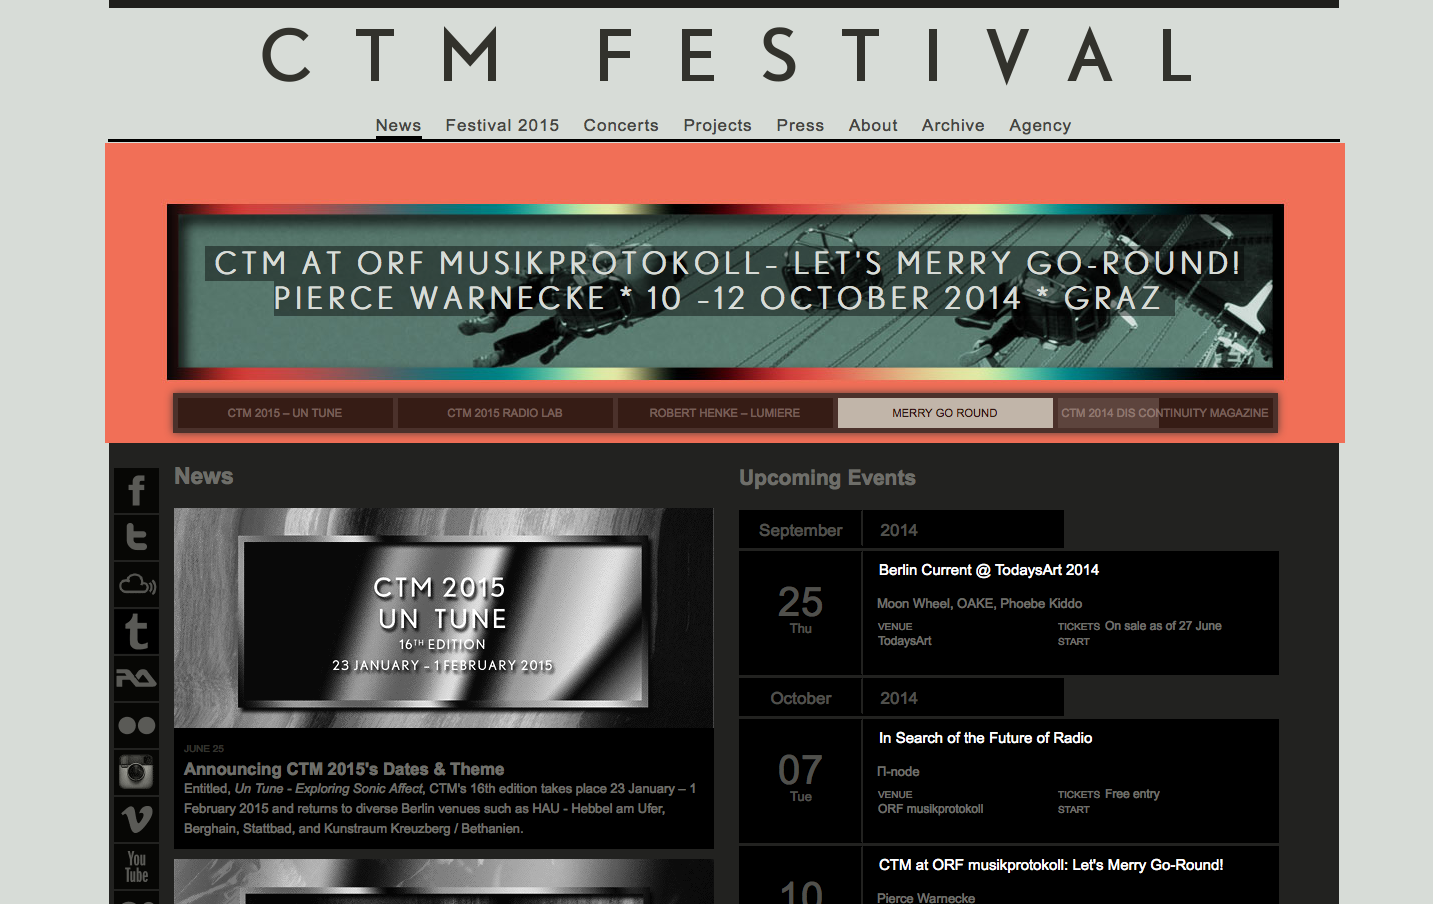 http://www.ctm-festival.de/concerts/calendar/concert/2014/10/10/programme/event/lets_merry_go_round/